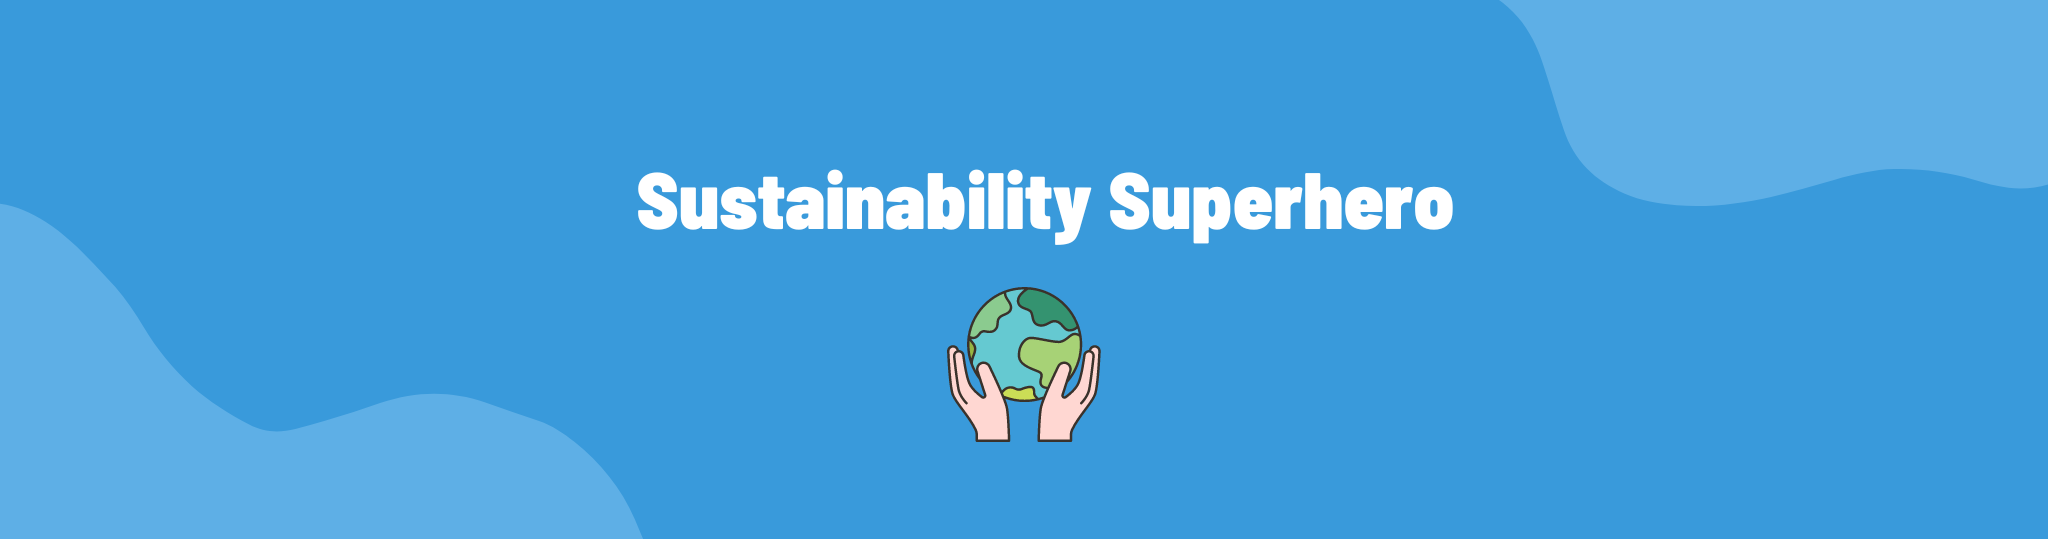 Sustainability Superhero: hoe teamlid Bernd mens, planeet en dier helpt